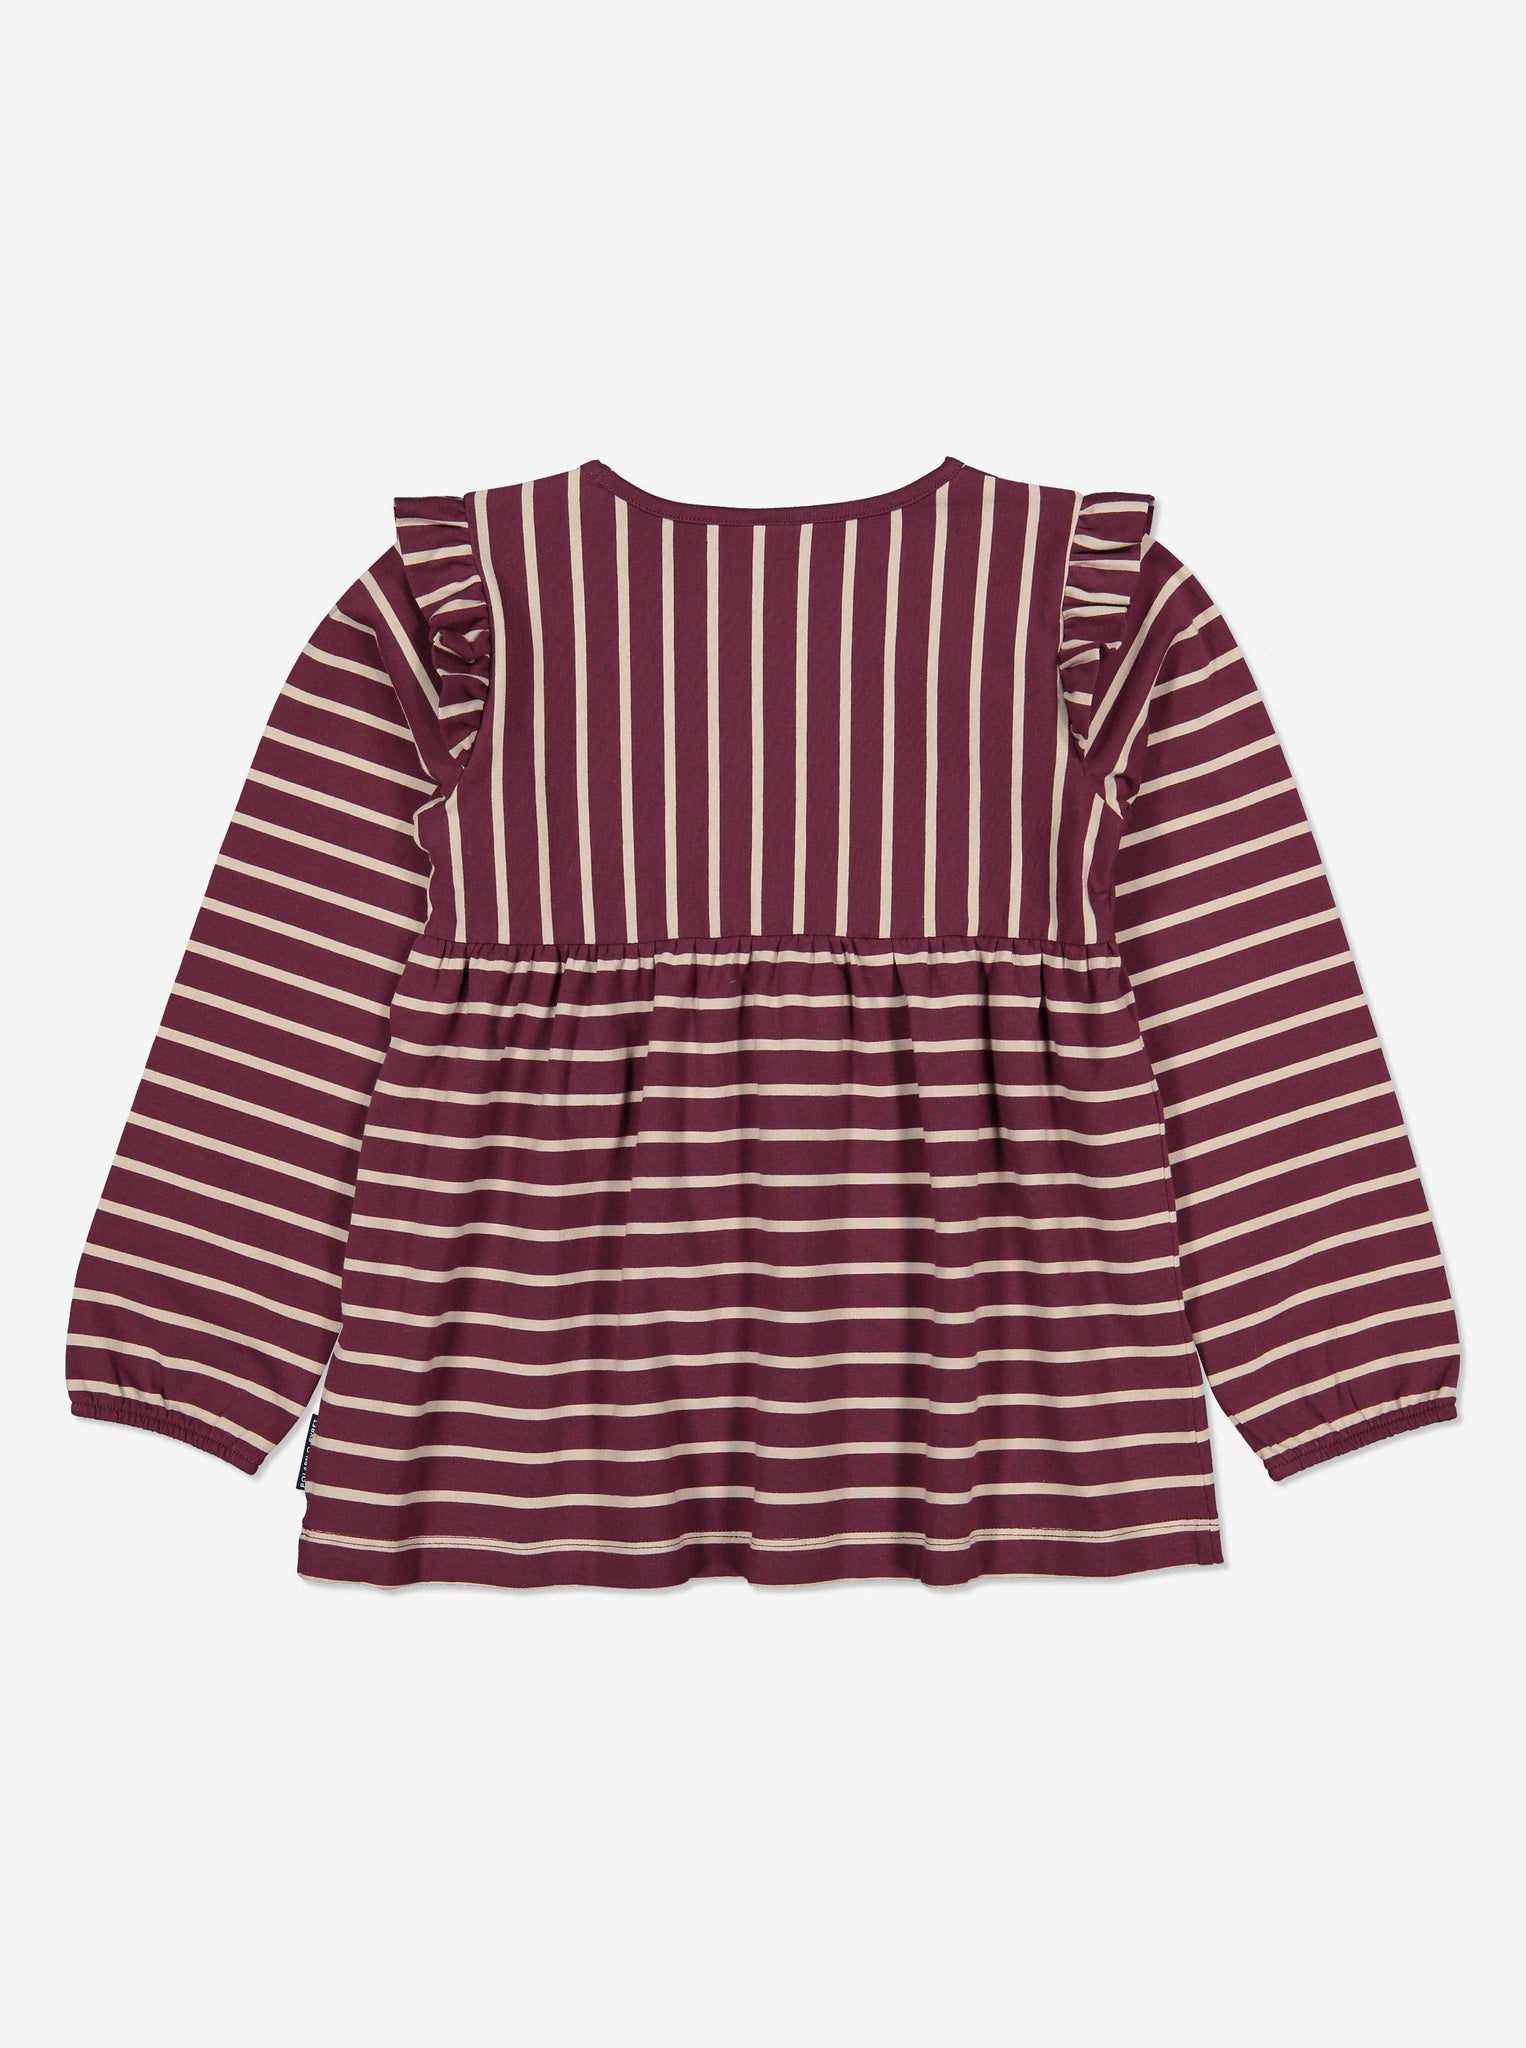 Striped Kids Top-Girl-1-6y-Purple